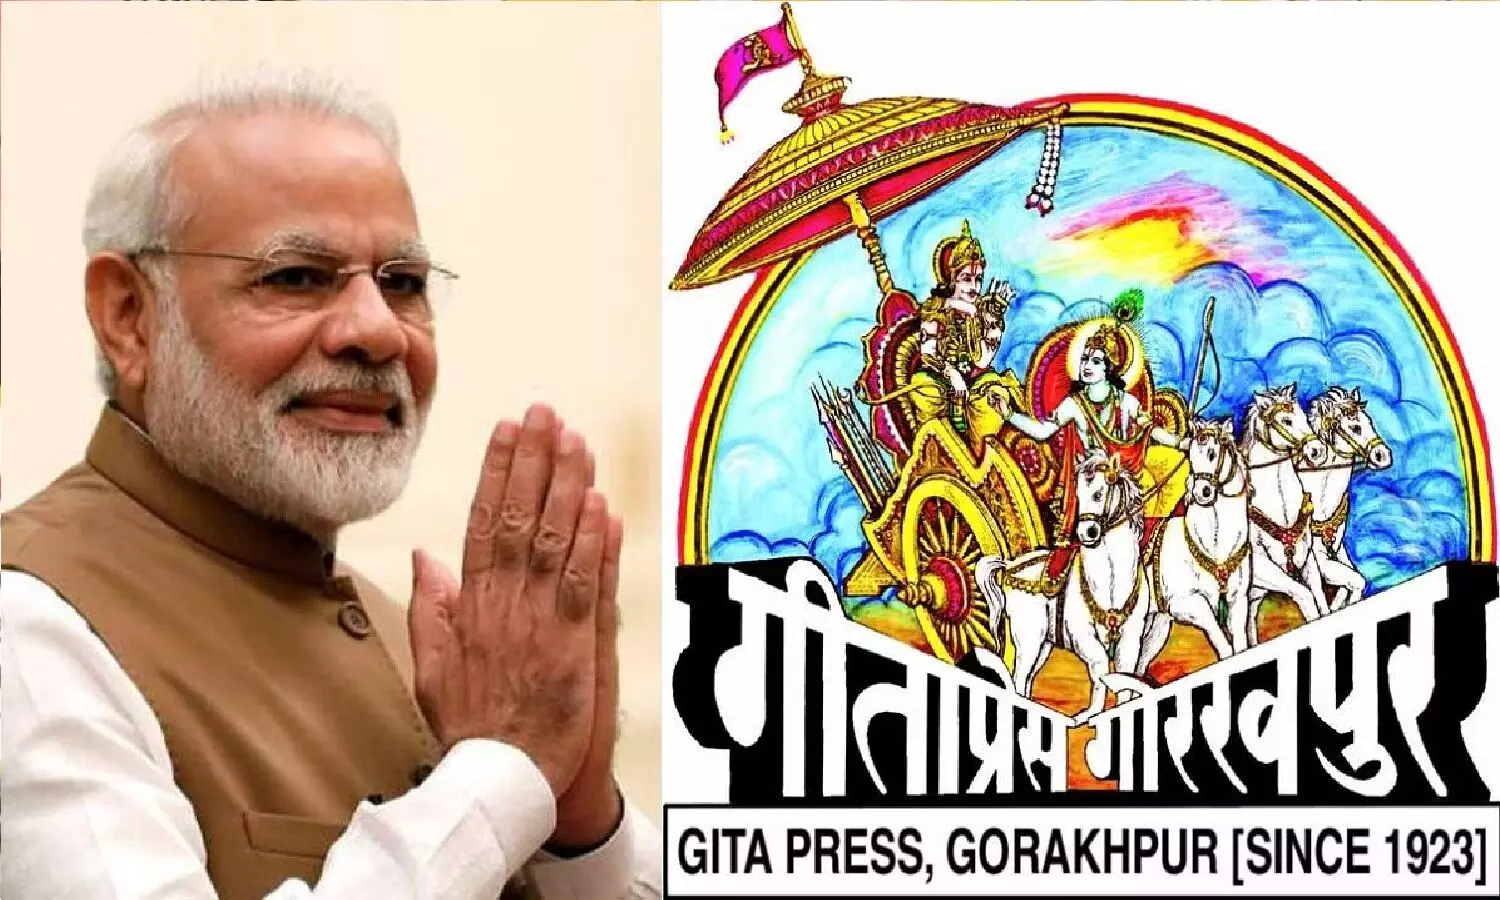 मोदी सरकार गीता प्रेस को गांधी शांति पुरस्कार दे रही, कांग्रेस बुरा मान गई